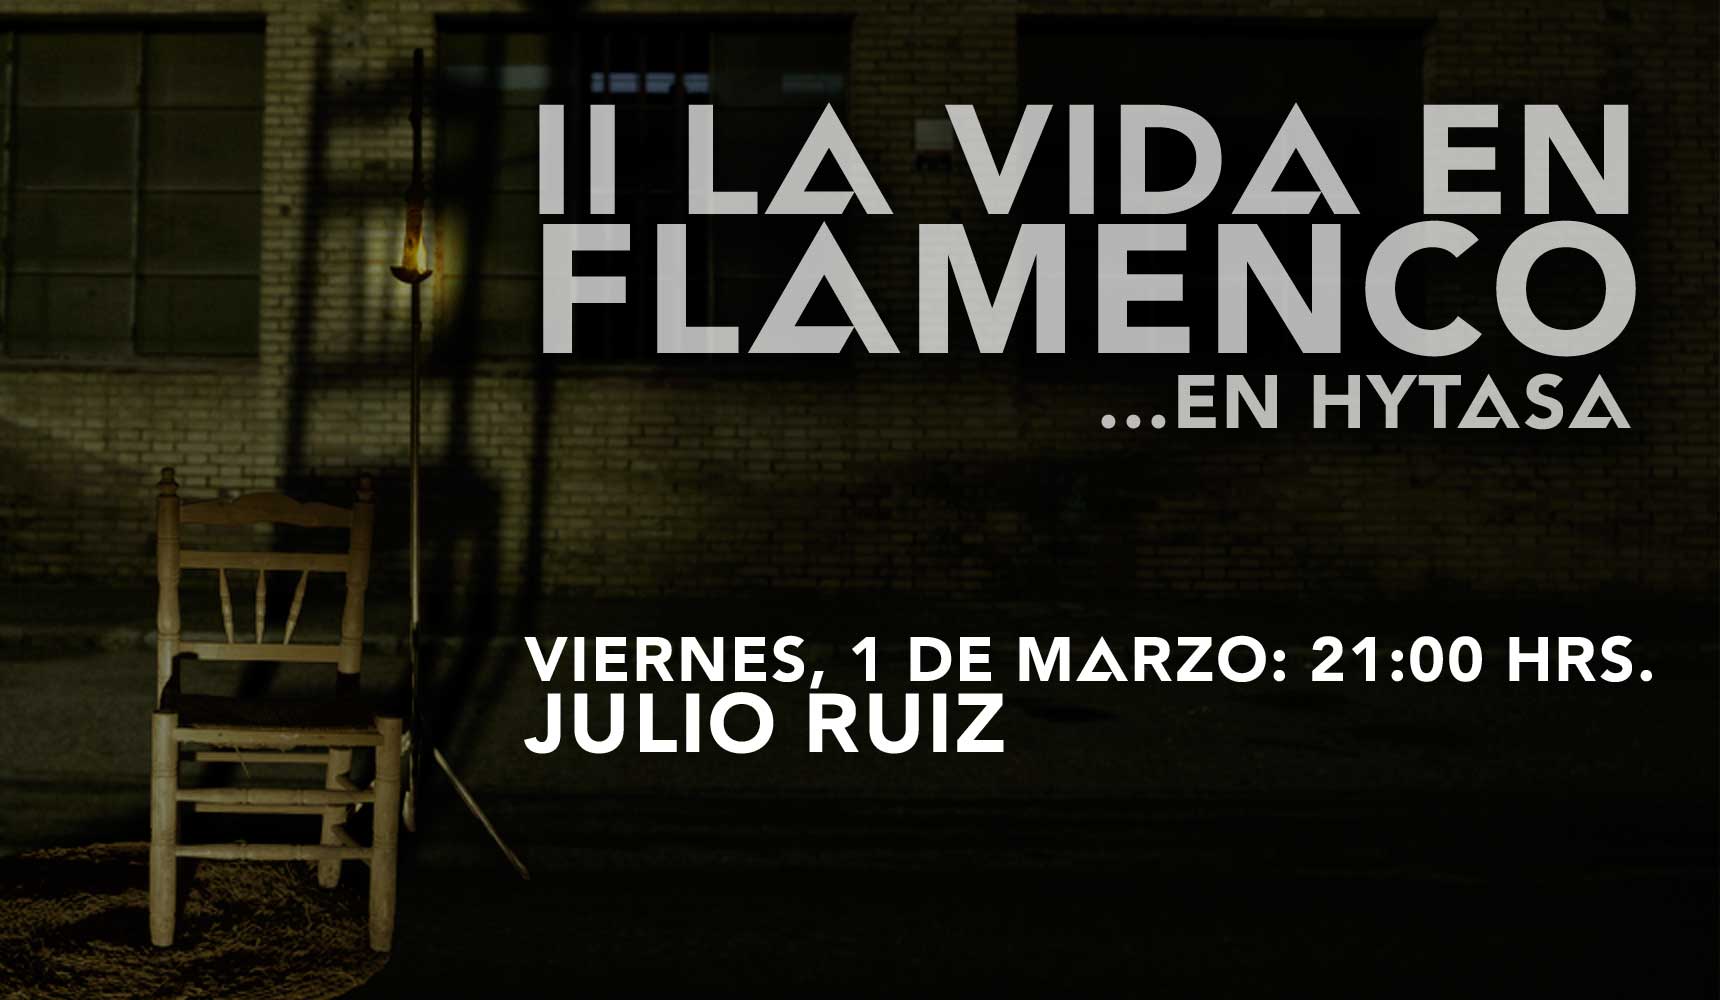 La Vida en Flamenco con Julio Ruíz